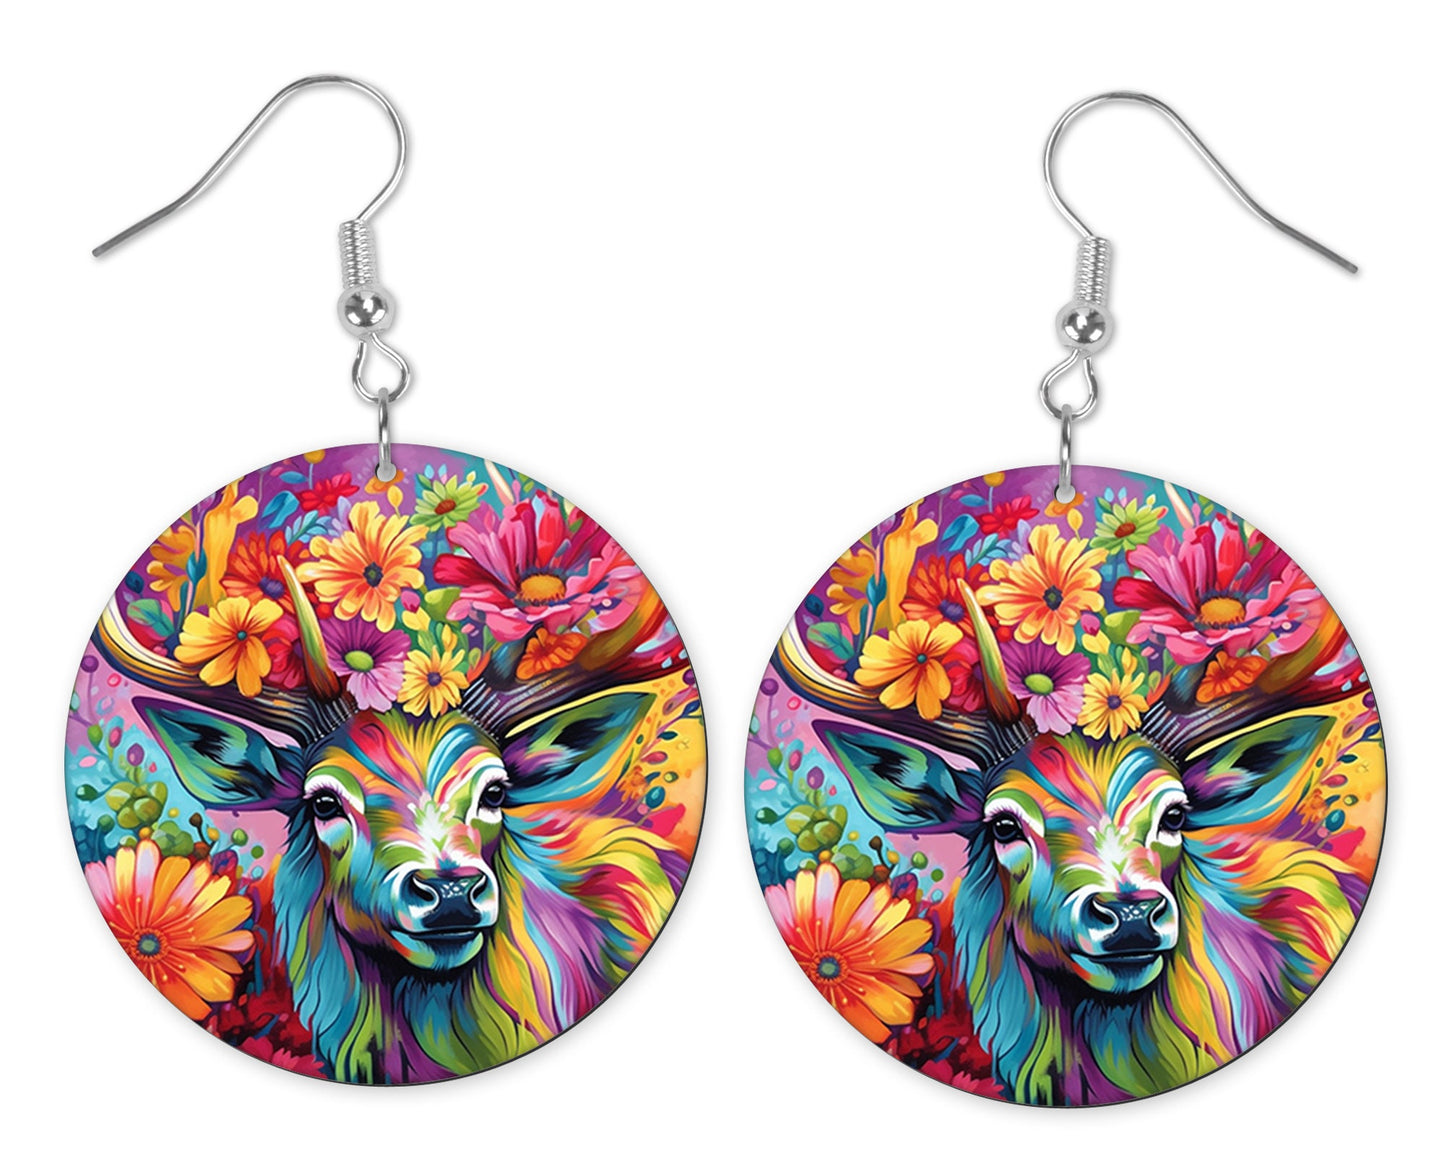 Bright Floral Deer Round Printed Wood Earrings Handmade Jewelry